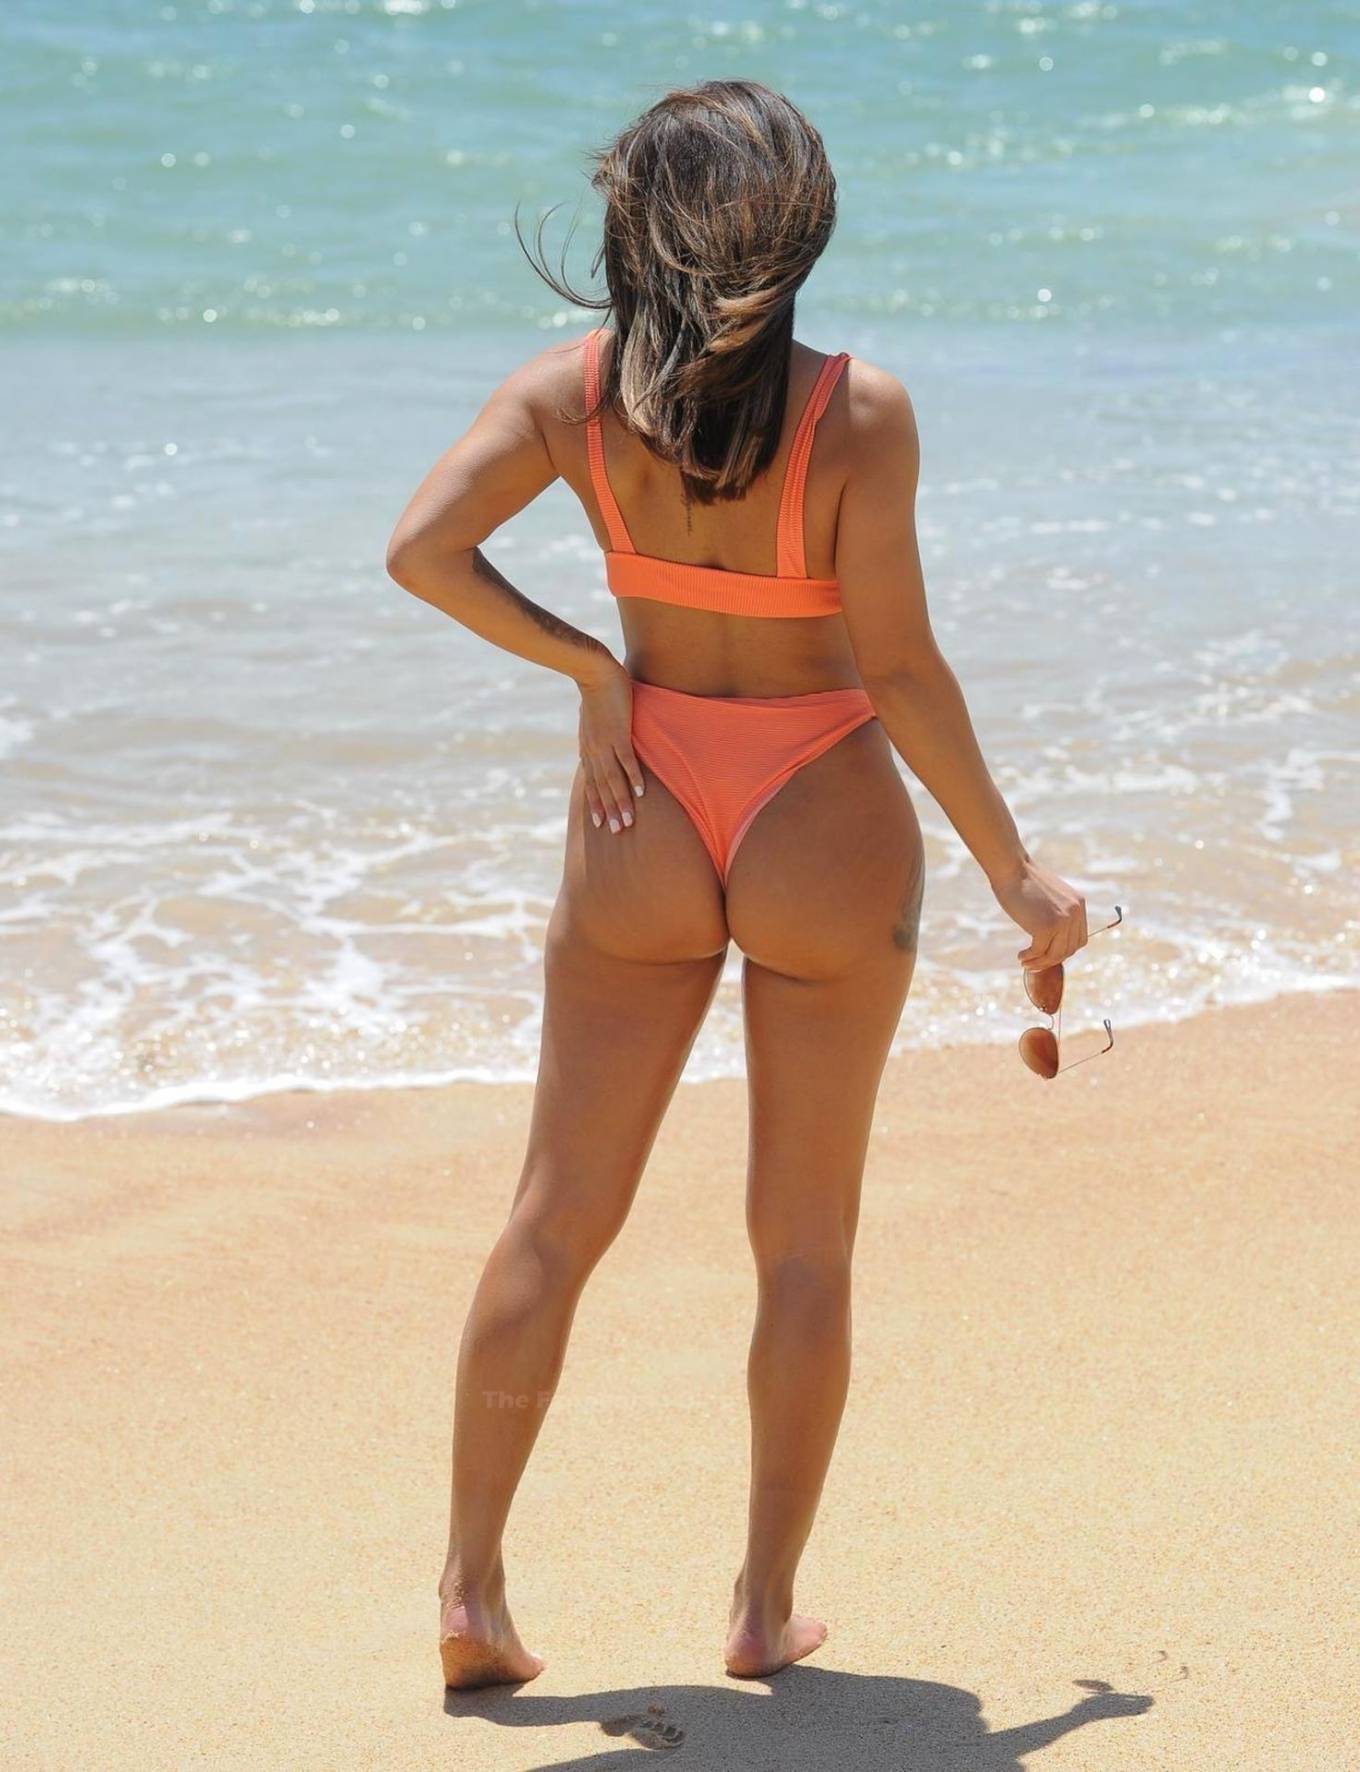 Kayleigh Morris 2020 : Kayleigh Morris – In orange bikini on the beach in Cyprus-19